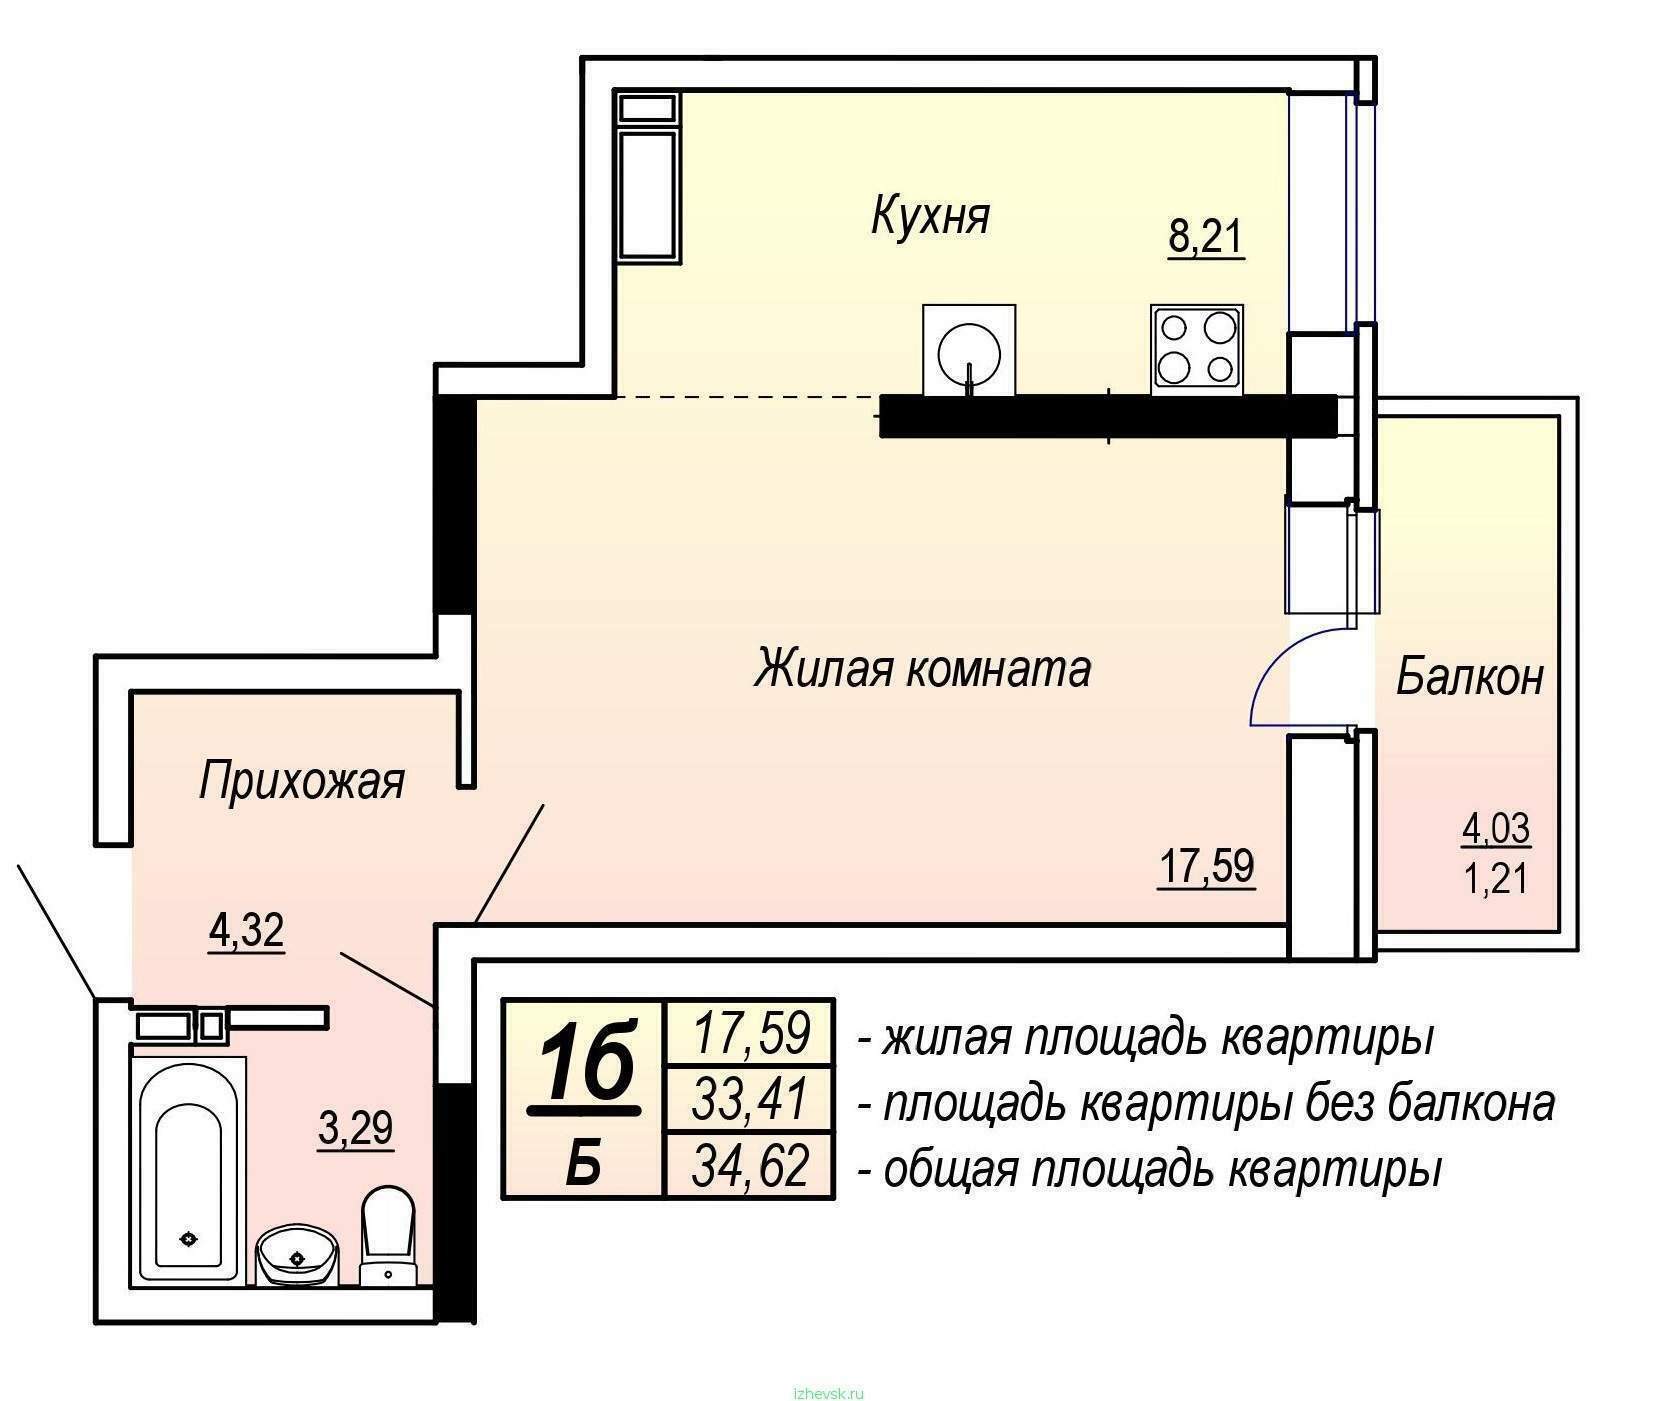 Площадь жилых помещений определение. Общая площадь квартиры. Жилая площадь квартиры и общая площадь. Жилая площадь квартиры это. Общая площадь квартиры на плане.